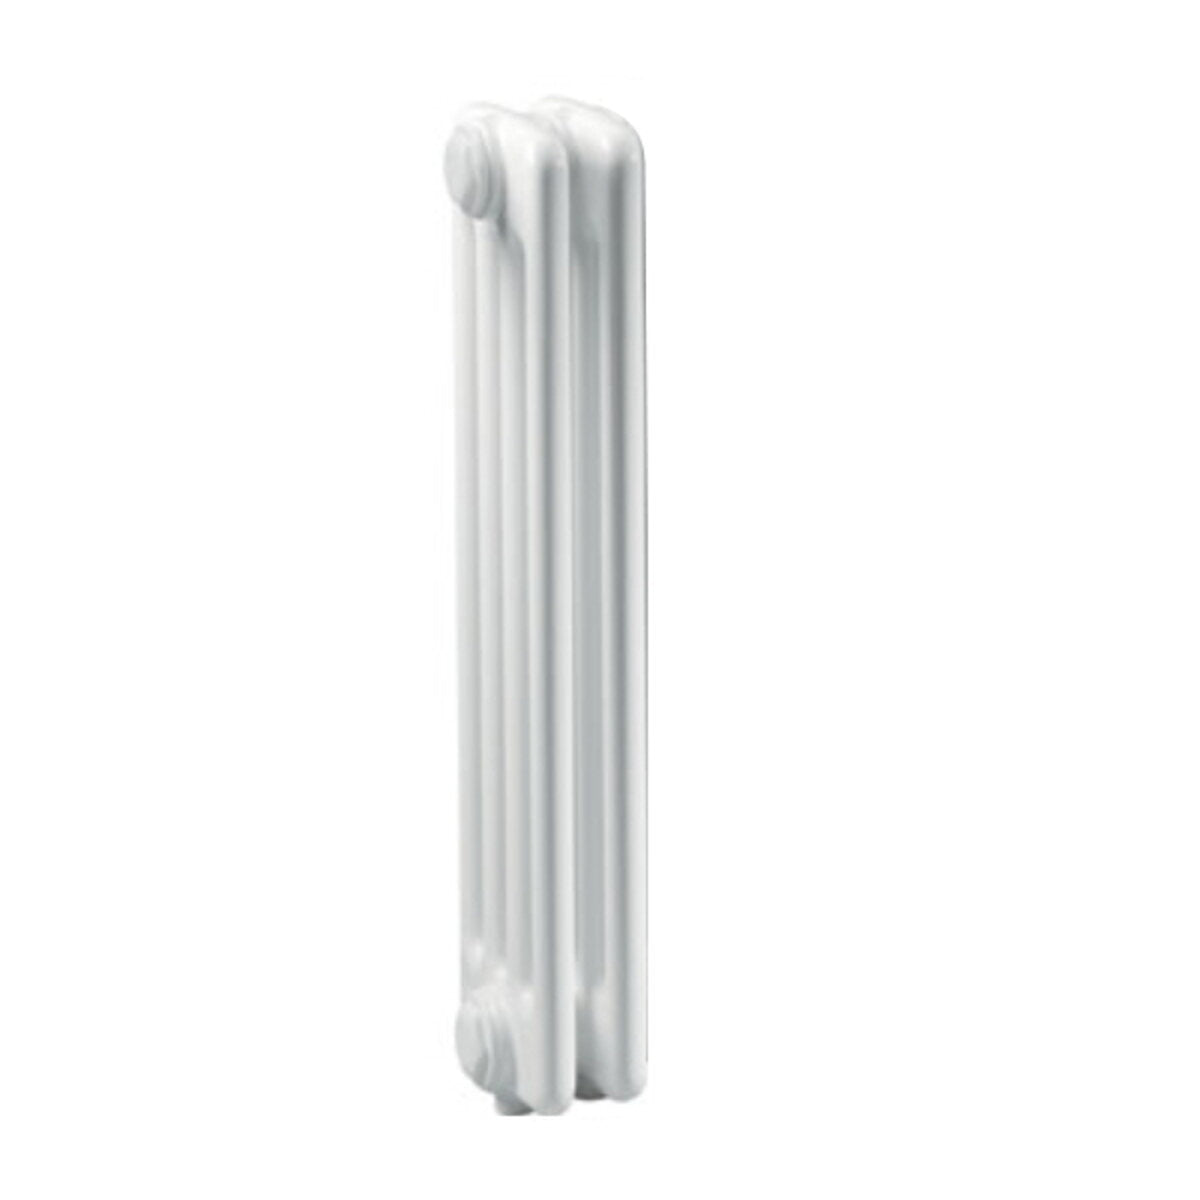 Ercos Comby Stahlsäulenheizkörper 2 Elemente 3 Säulen Achsabstand 1435 mm